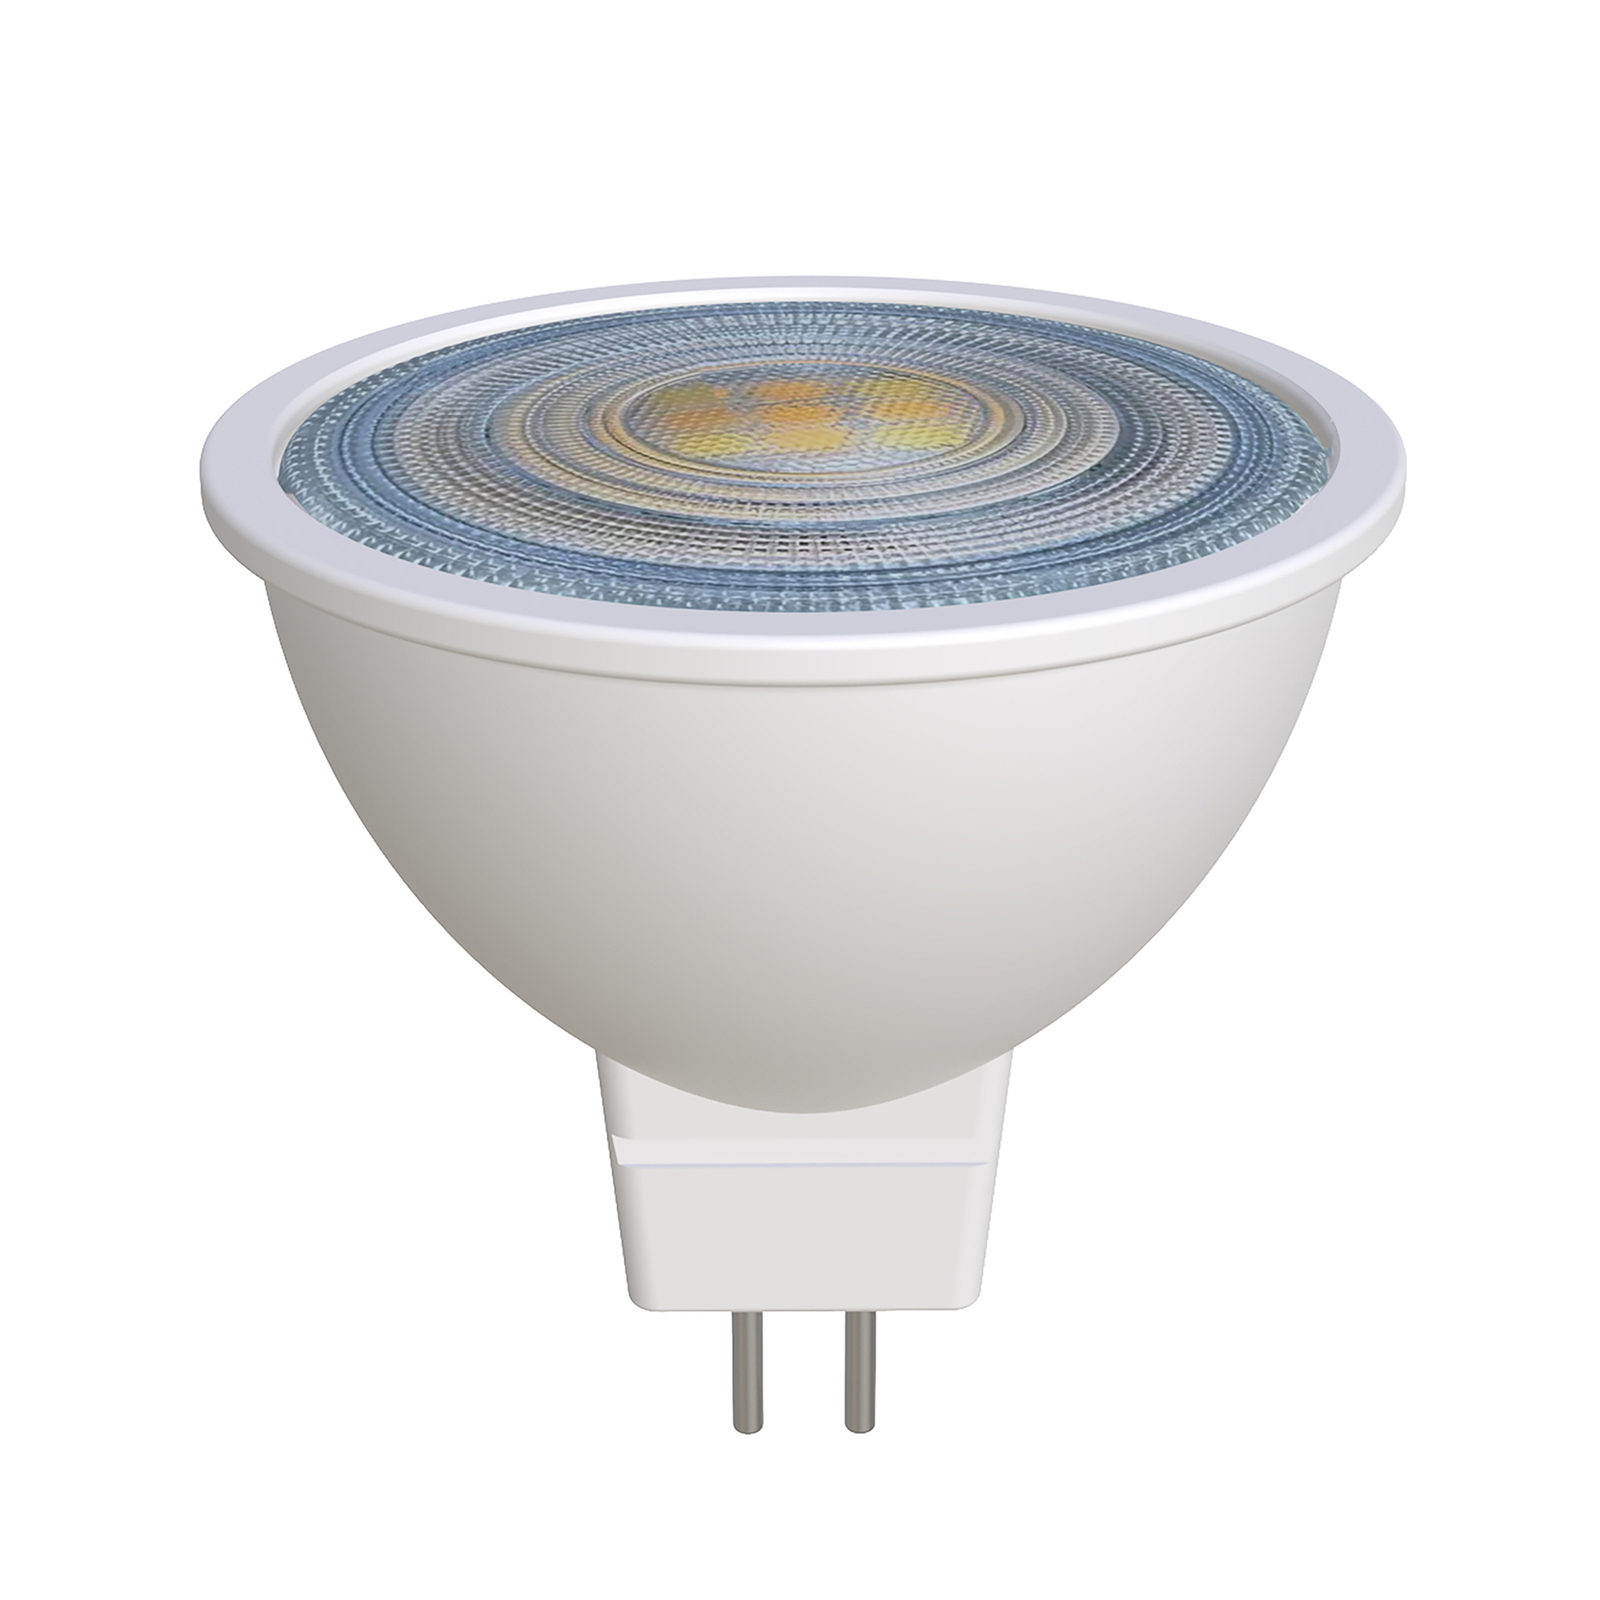 Prios LED reflectorlamp GU5.3 7.5W 621lm 36° wit 830